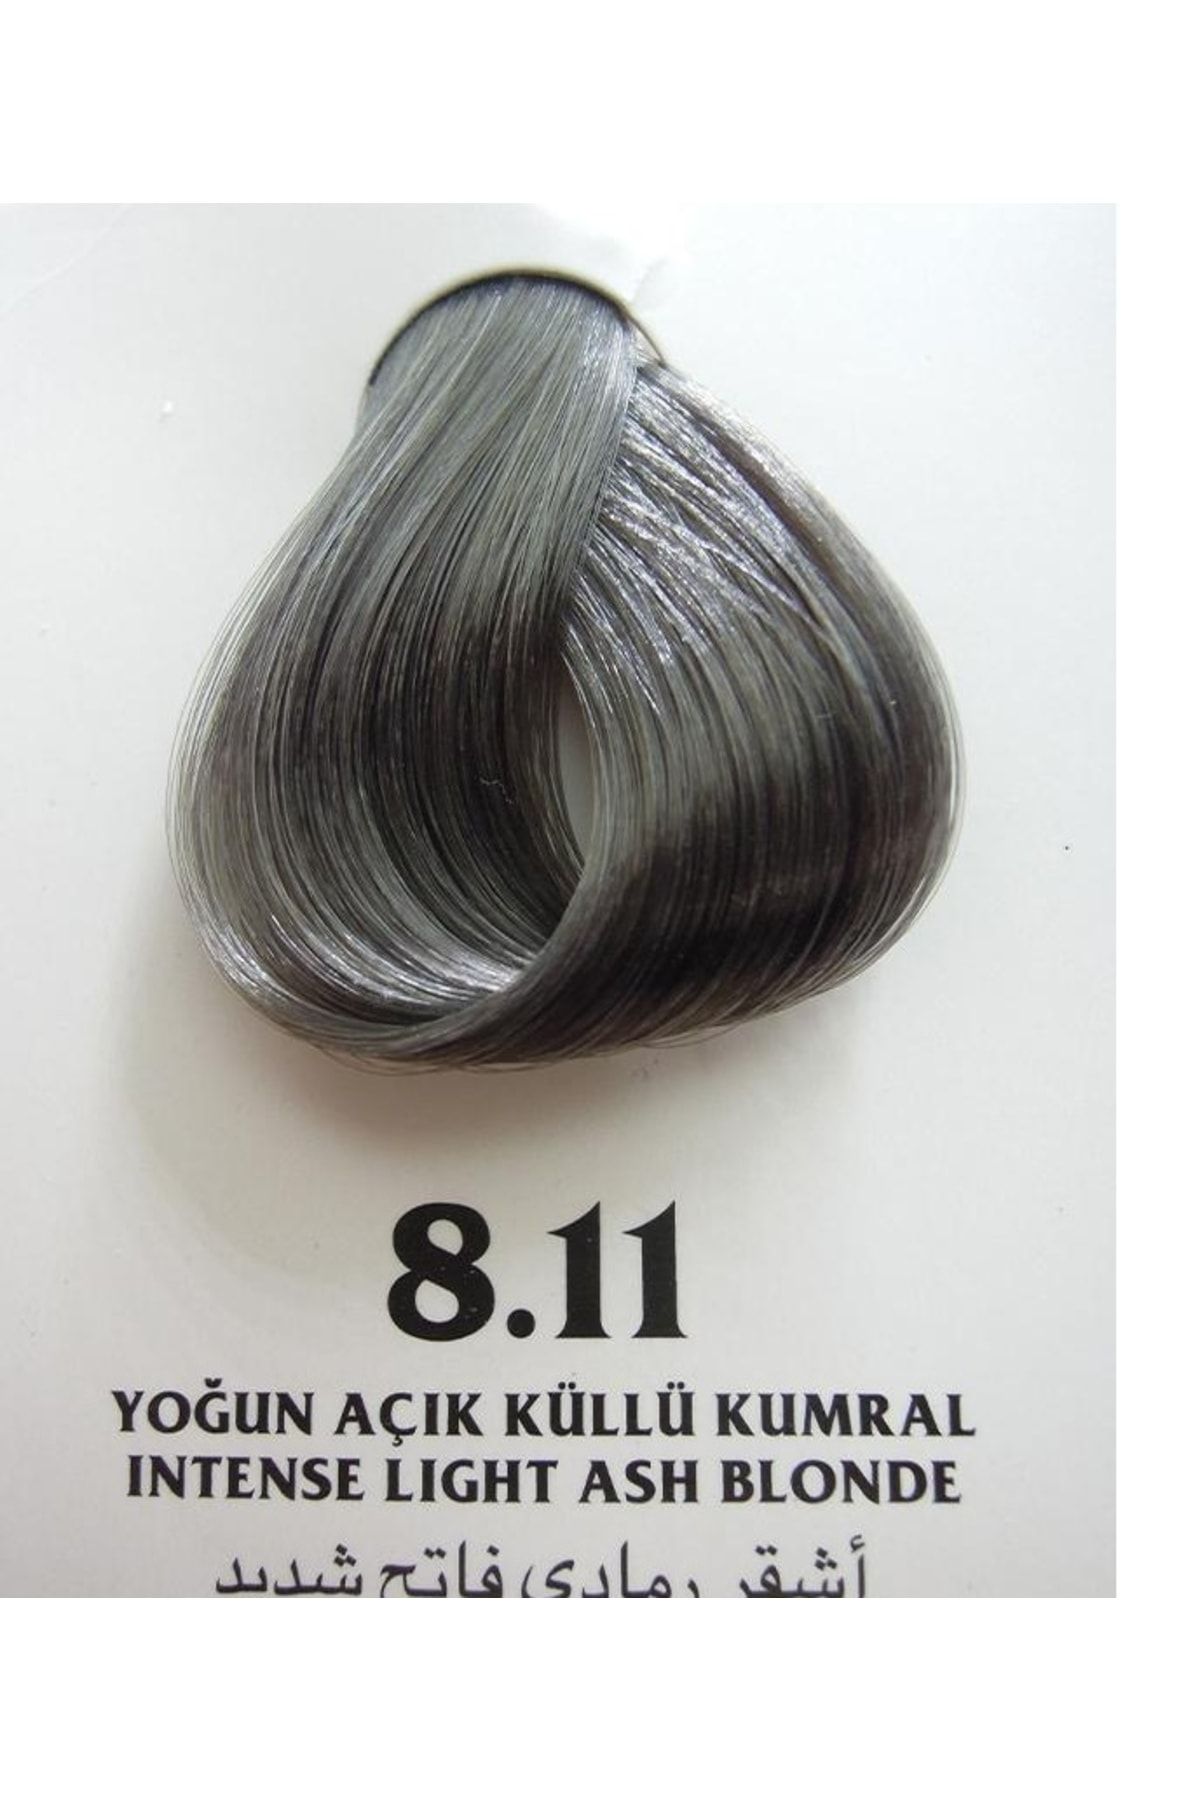 Clemency Farmavita Saç Boyası Yoğun Açık Küllü Kumral 8.11 60gr.